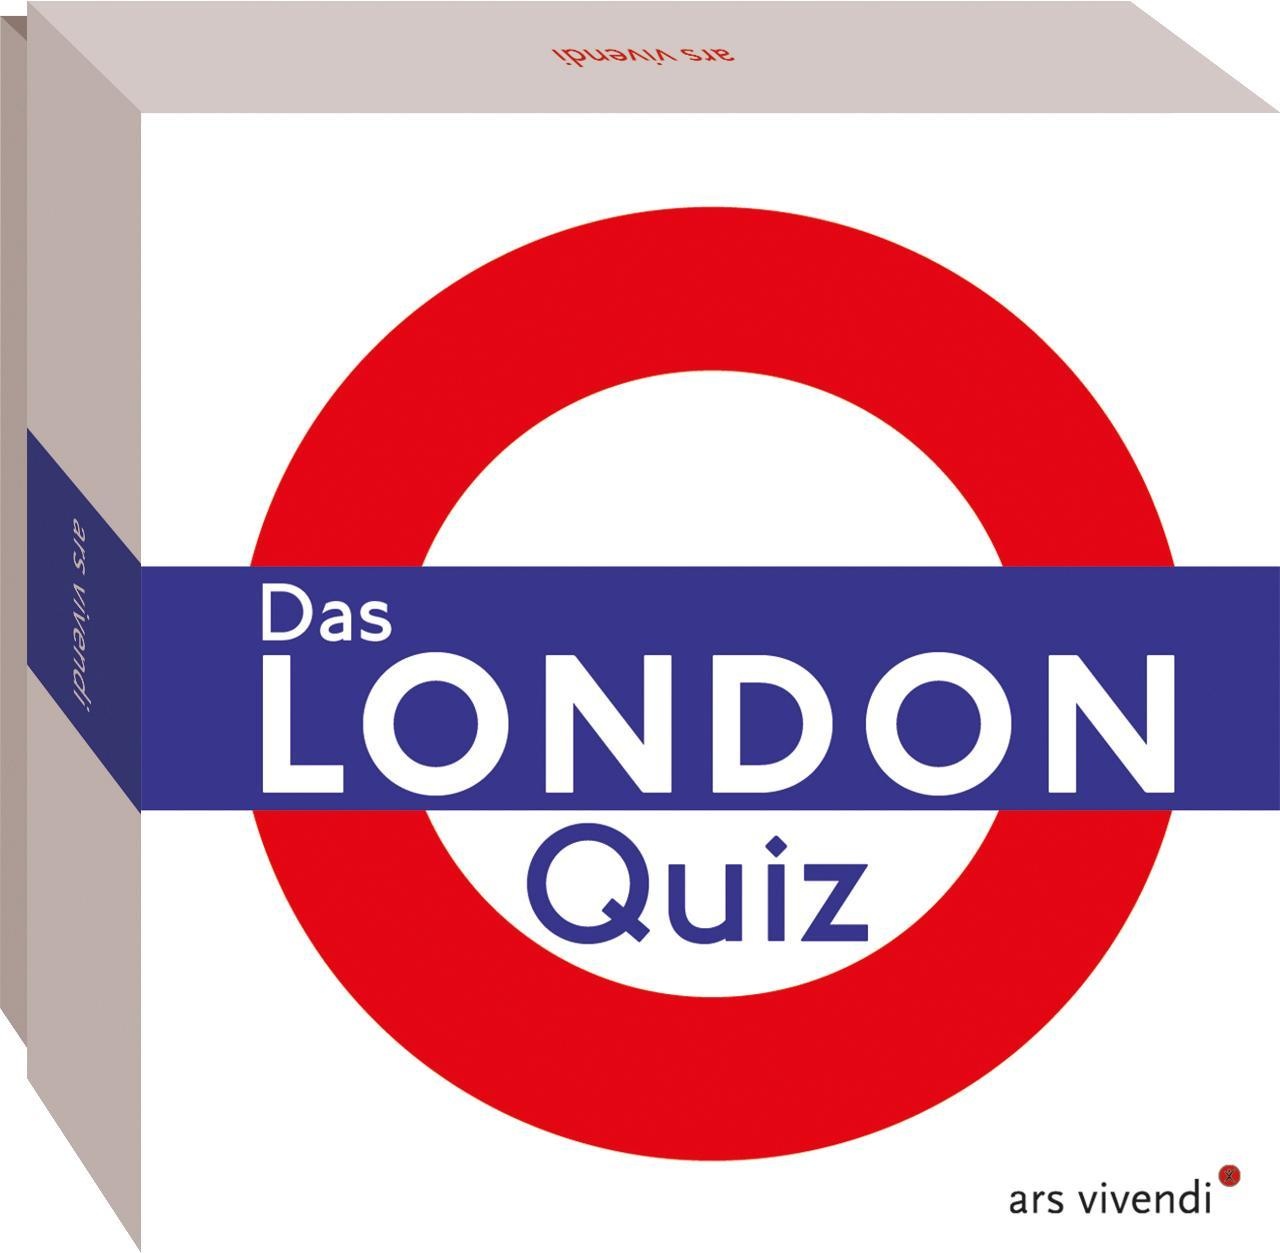 ARSVIVENDI - Das London-Quiz